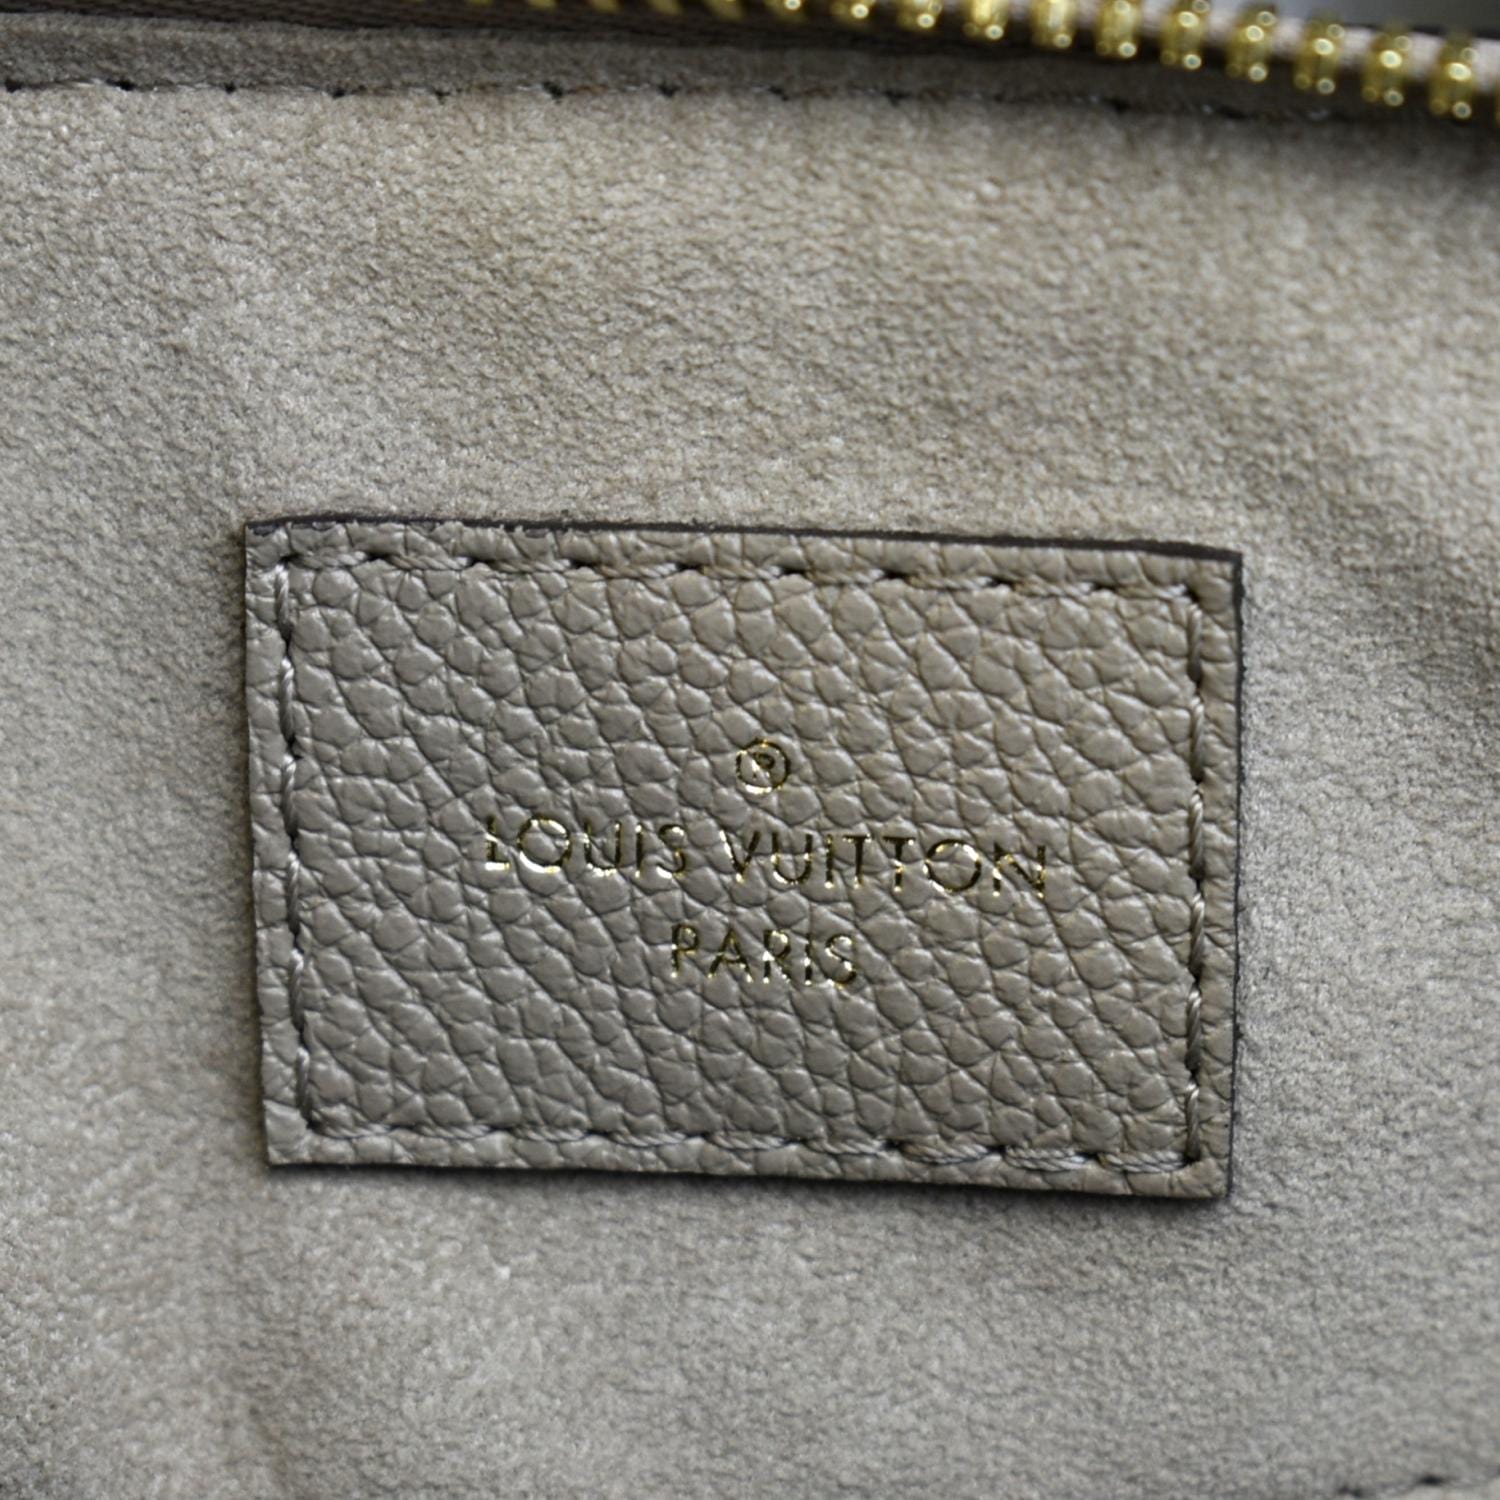 Louis Vuitton Tourterelle Empreinte Monogram Giant Speedy Bandouliere 25 Bag  For Sale at 1stDibs